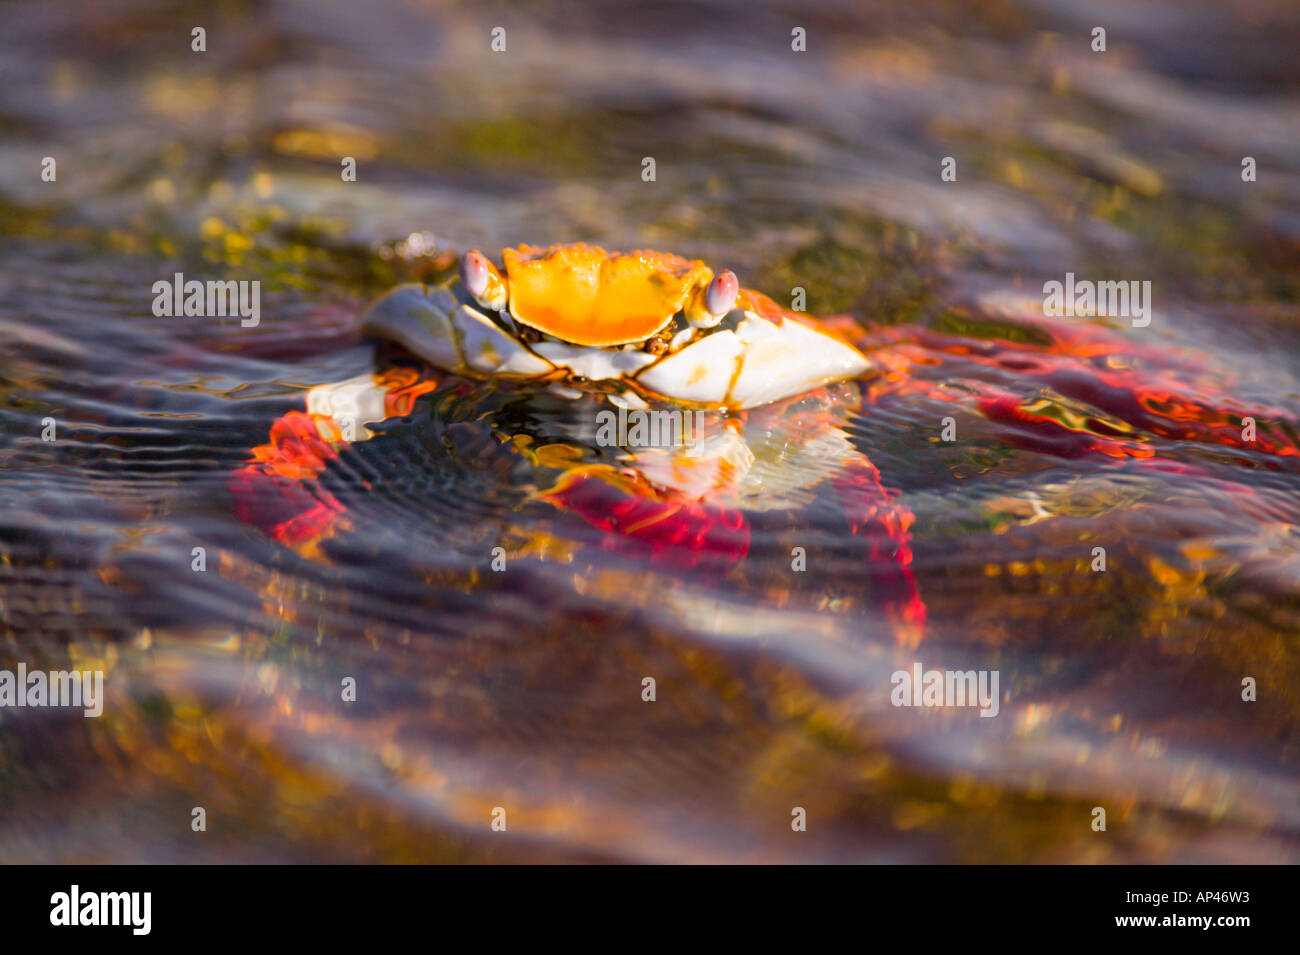 Ecuador, Galapagos Islands National Park, Puerto Egas, Sally Lightfoot Crabs (Grapsus grapsus) Stock Photo